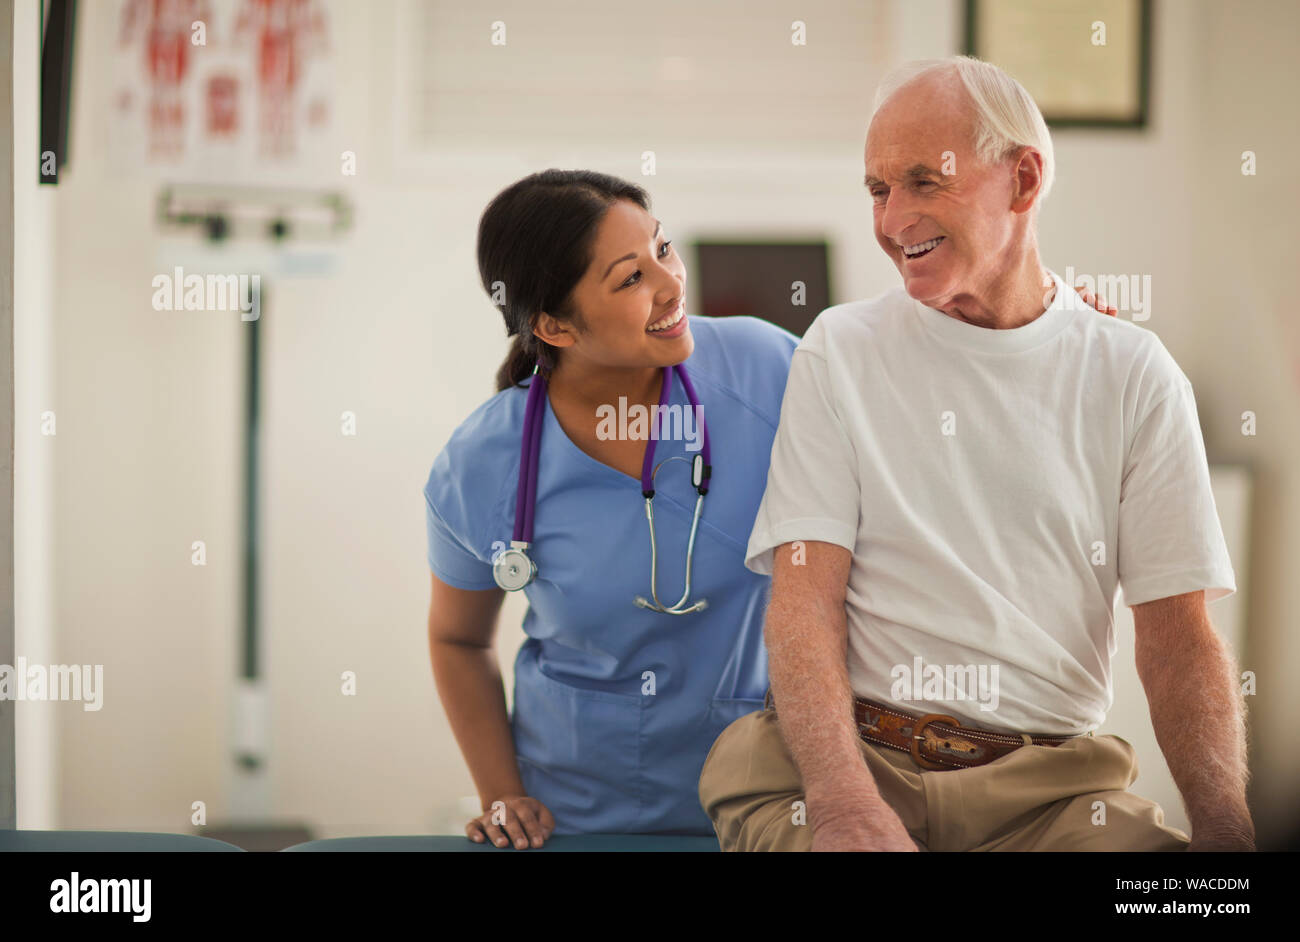 Lächelnd weibliche Krankenschwester beruhigend einen älteren männlichen Patienten in einem Untersuchungsraum. Stockfoto